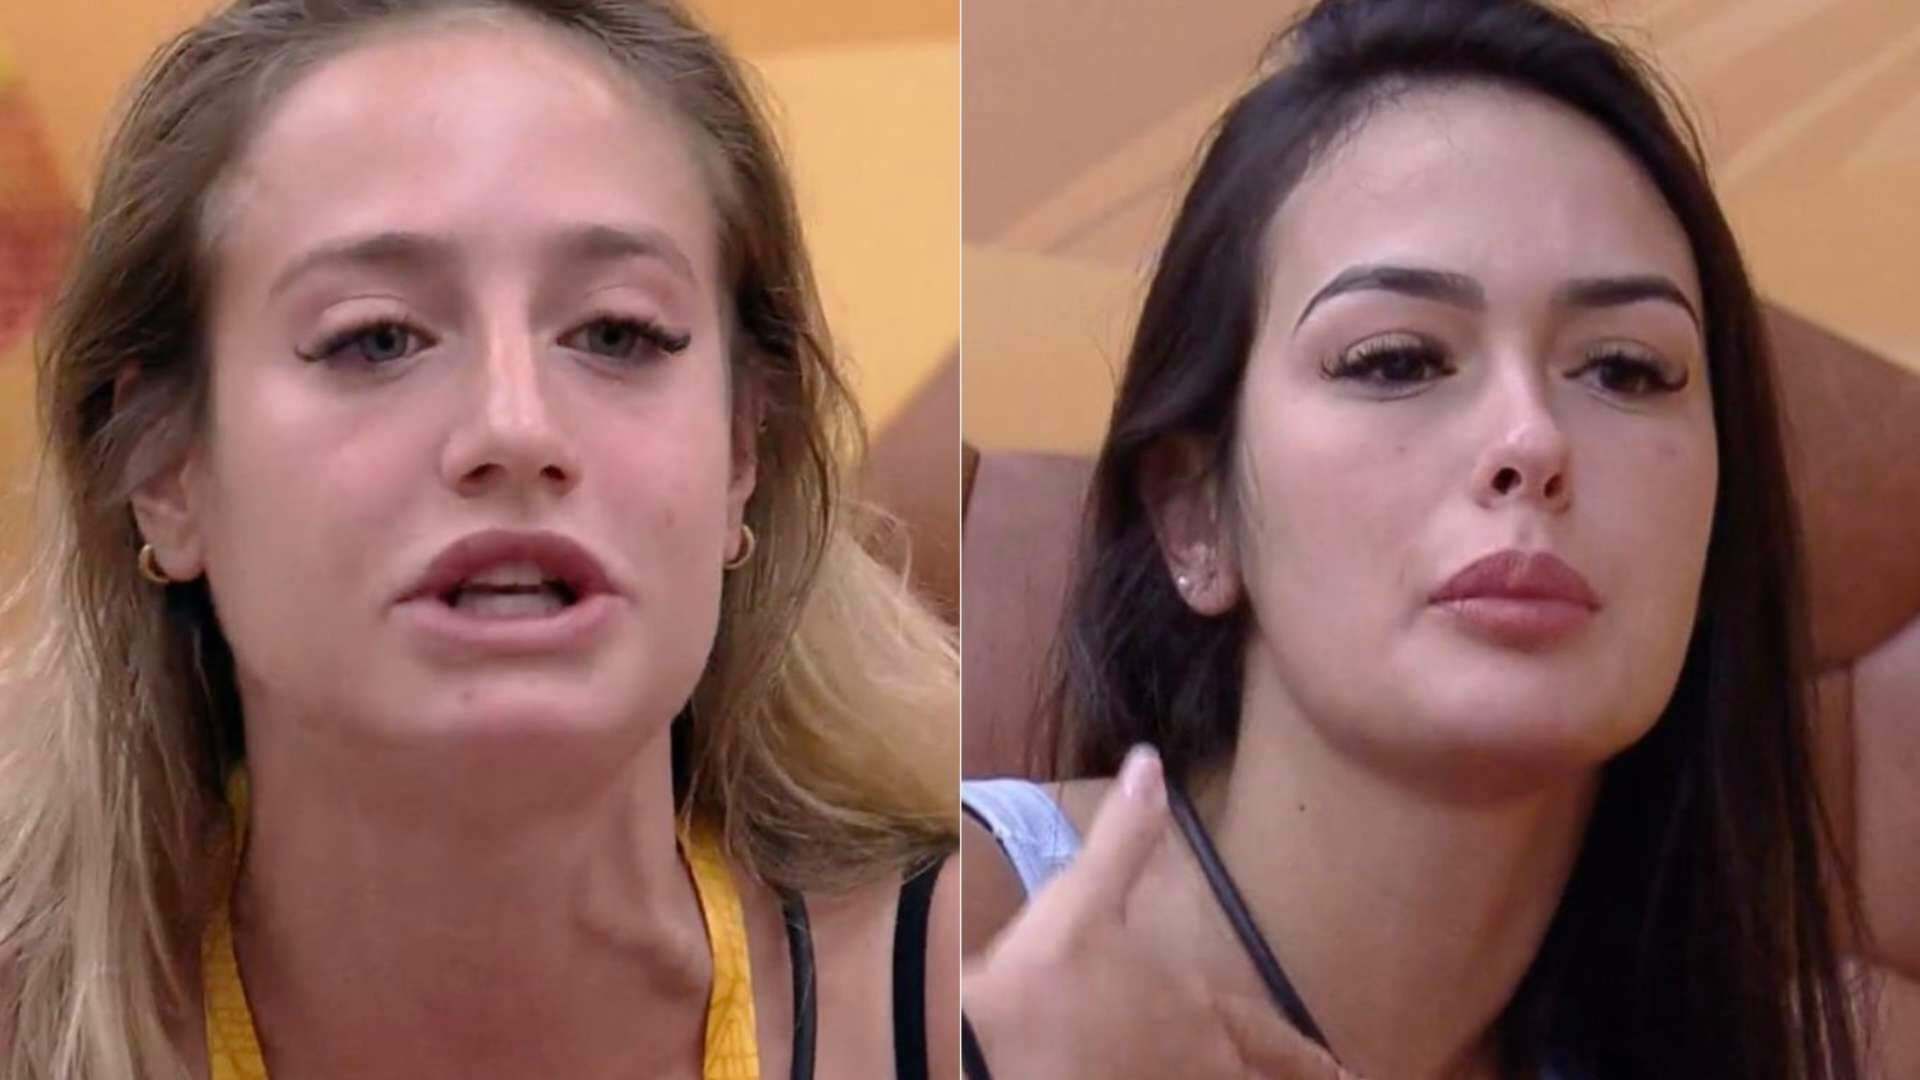 BBB 23: Abalou a relação? Larissa e Bruna discutem por motivo inusitado e preocupam os fãs - Metropolitana FM